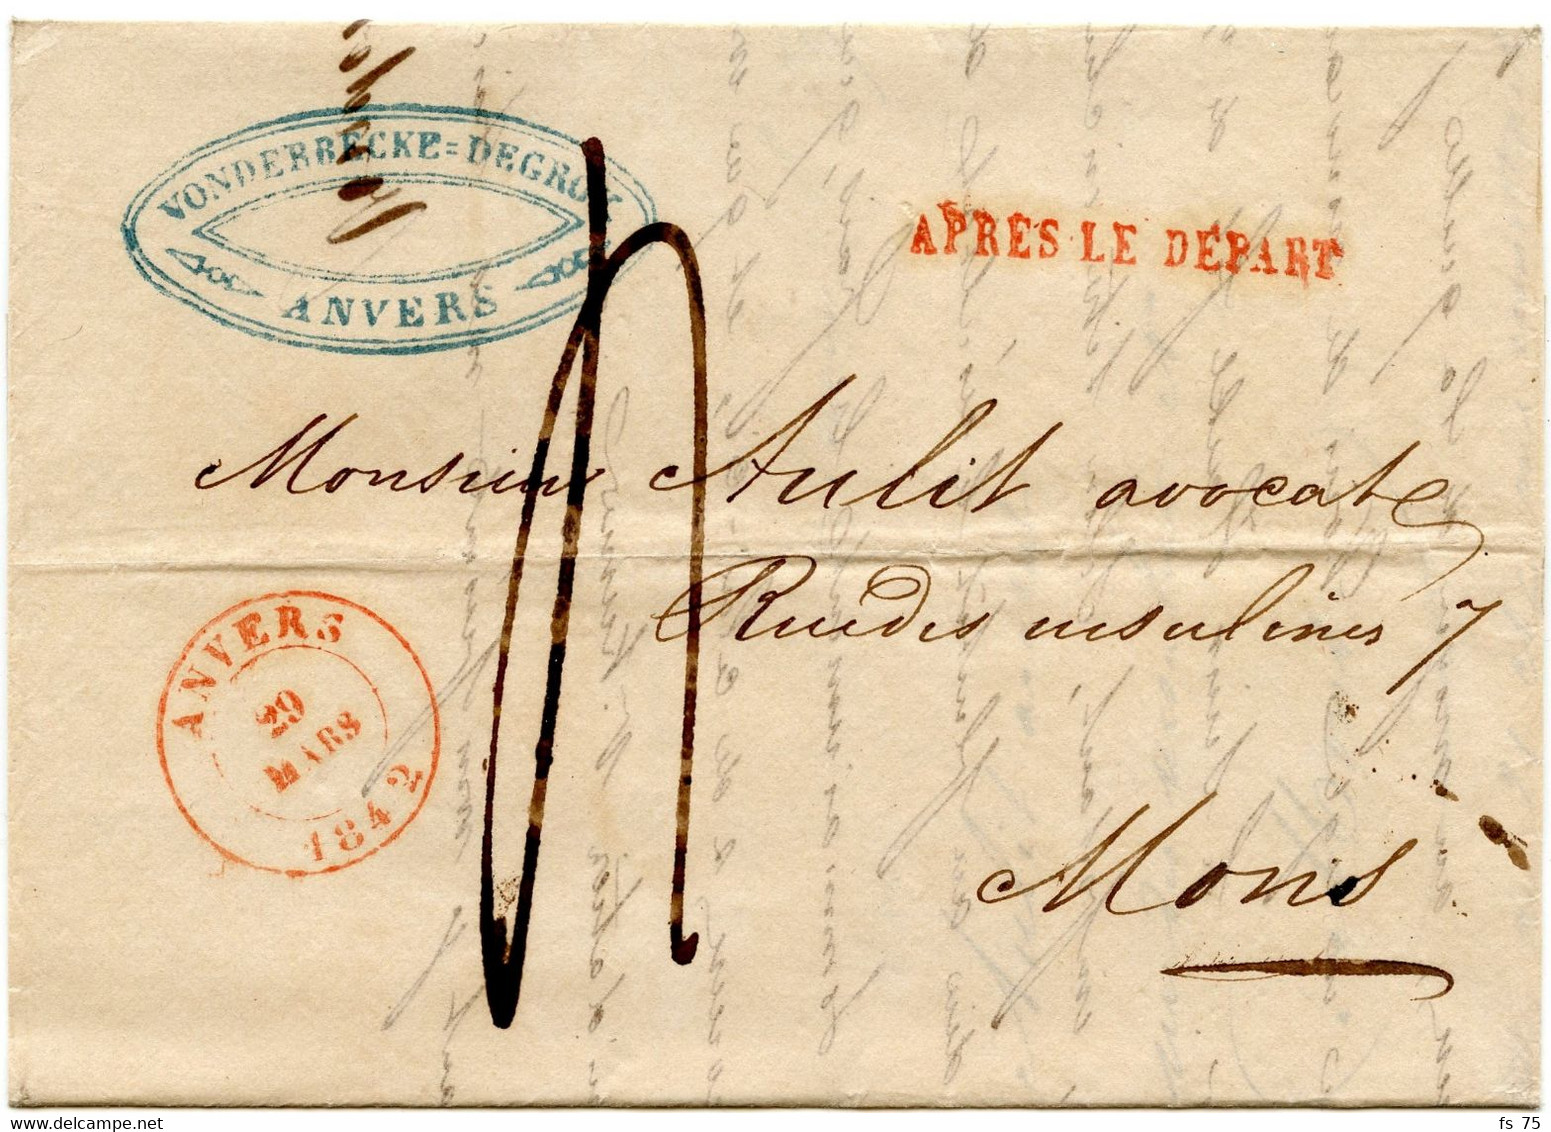 BELGIQUE - ANVERS + APRES LE DEPART SUR LETTRE AVEC CORRESPONDANCE, 1842 - 1830-1849 (Unabhängiges Belgien)